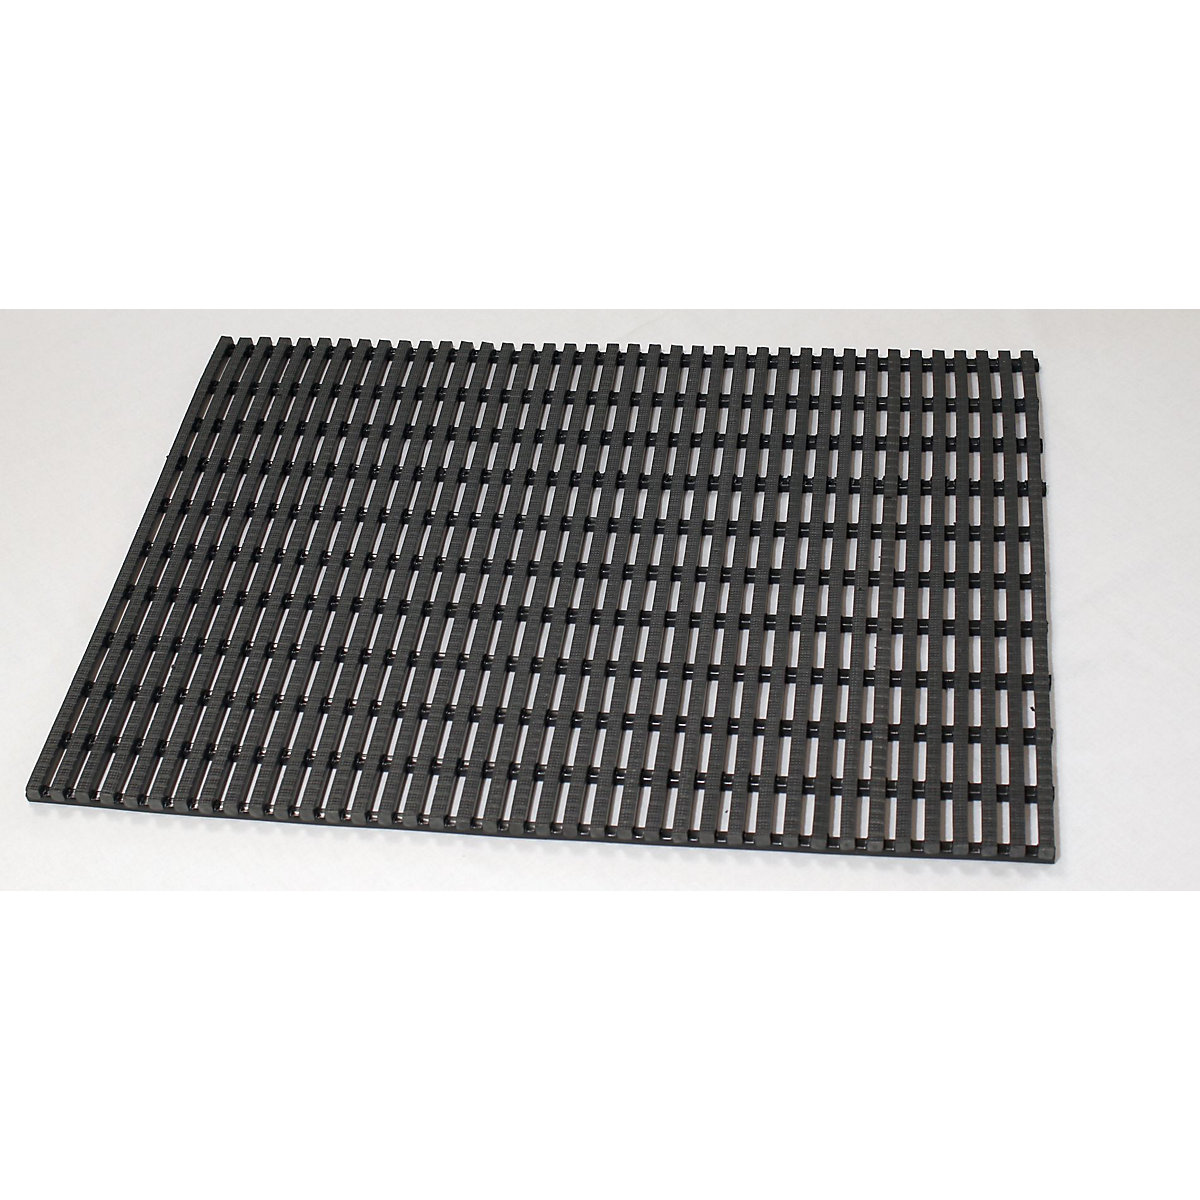 Industrial matting, anti-slip, per metre, black, width 600 mm-9